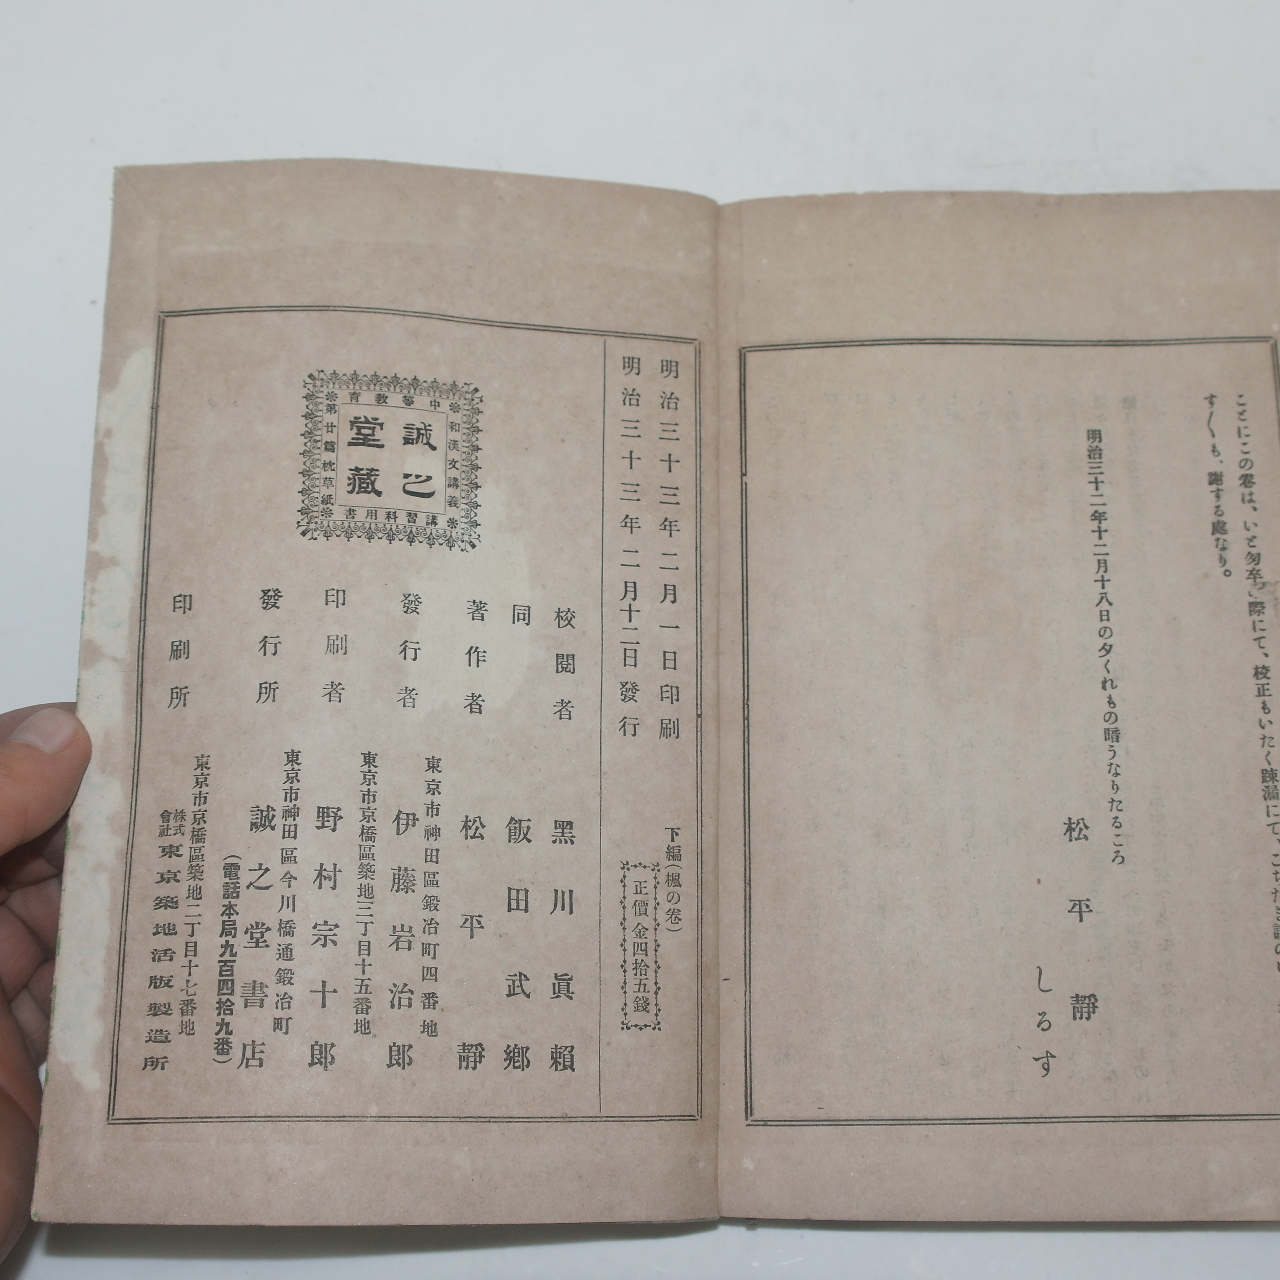 1900년(명치33년) 일본간행 침초지상해(枕草紙詳解)권3